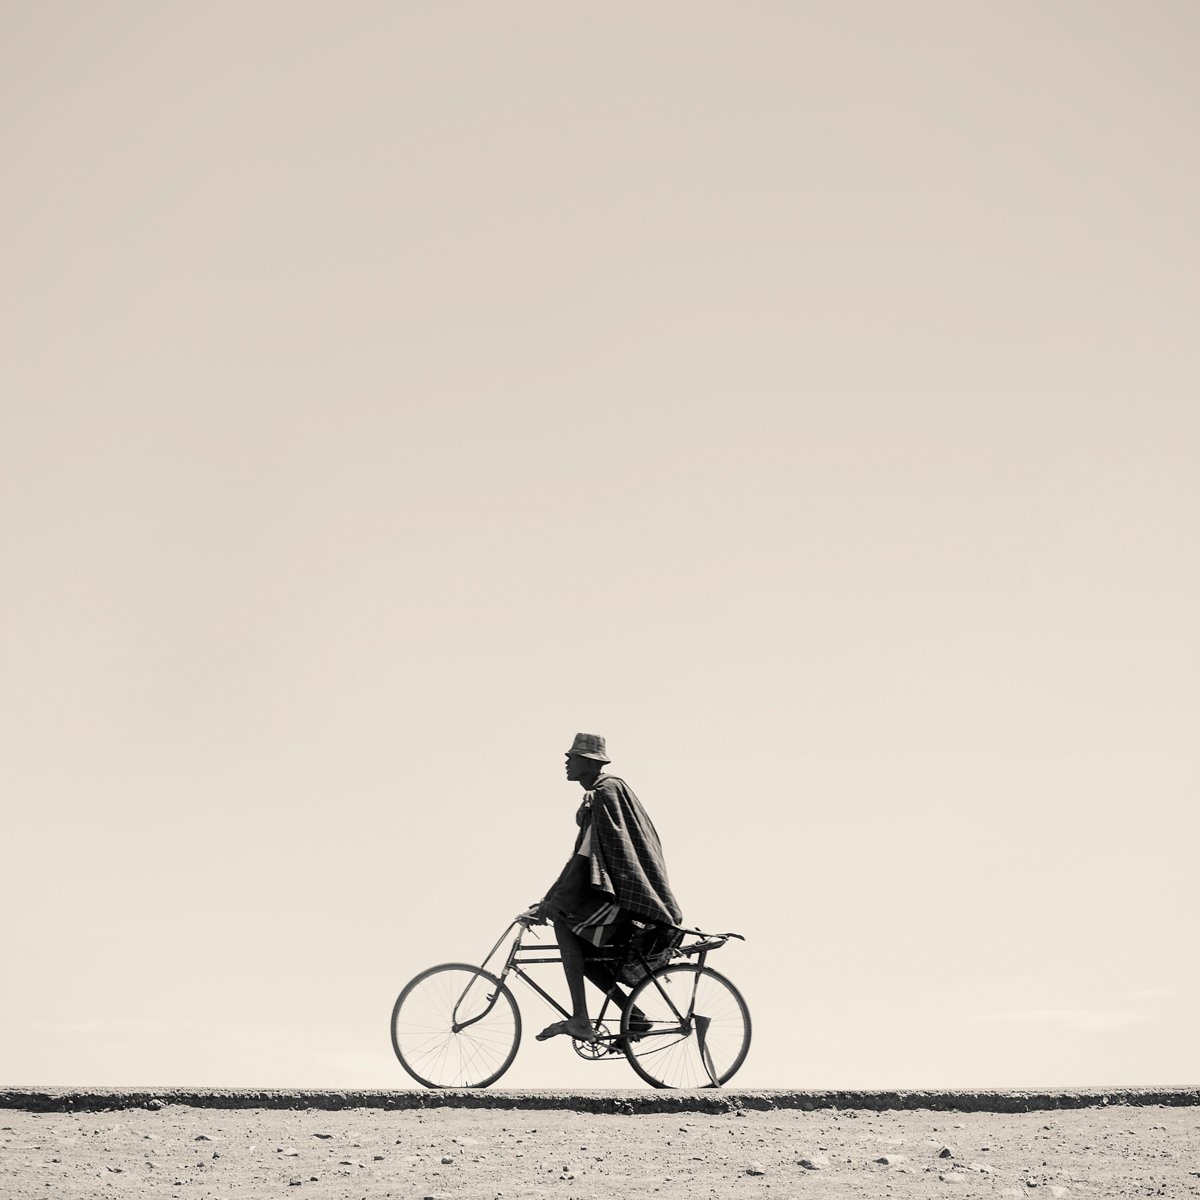 Ⓒ Marti Corn, Turkana on His Bicycle